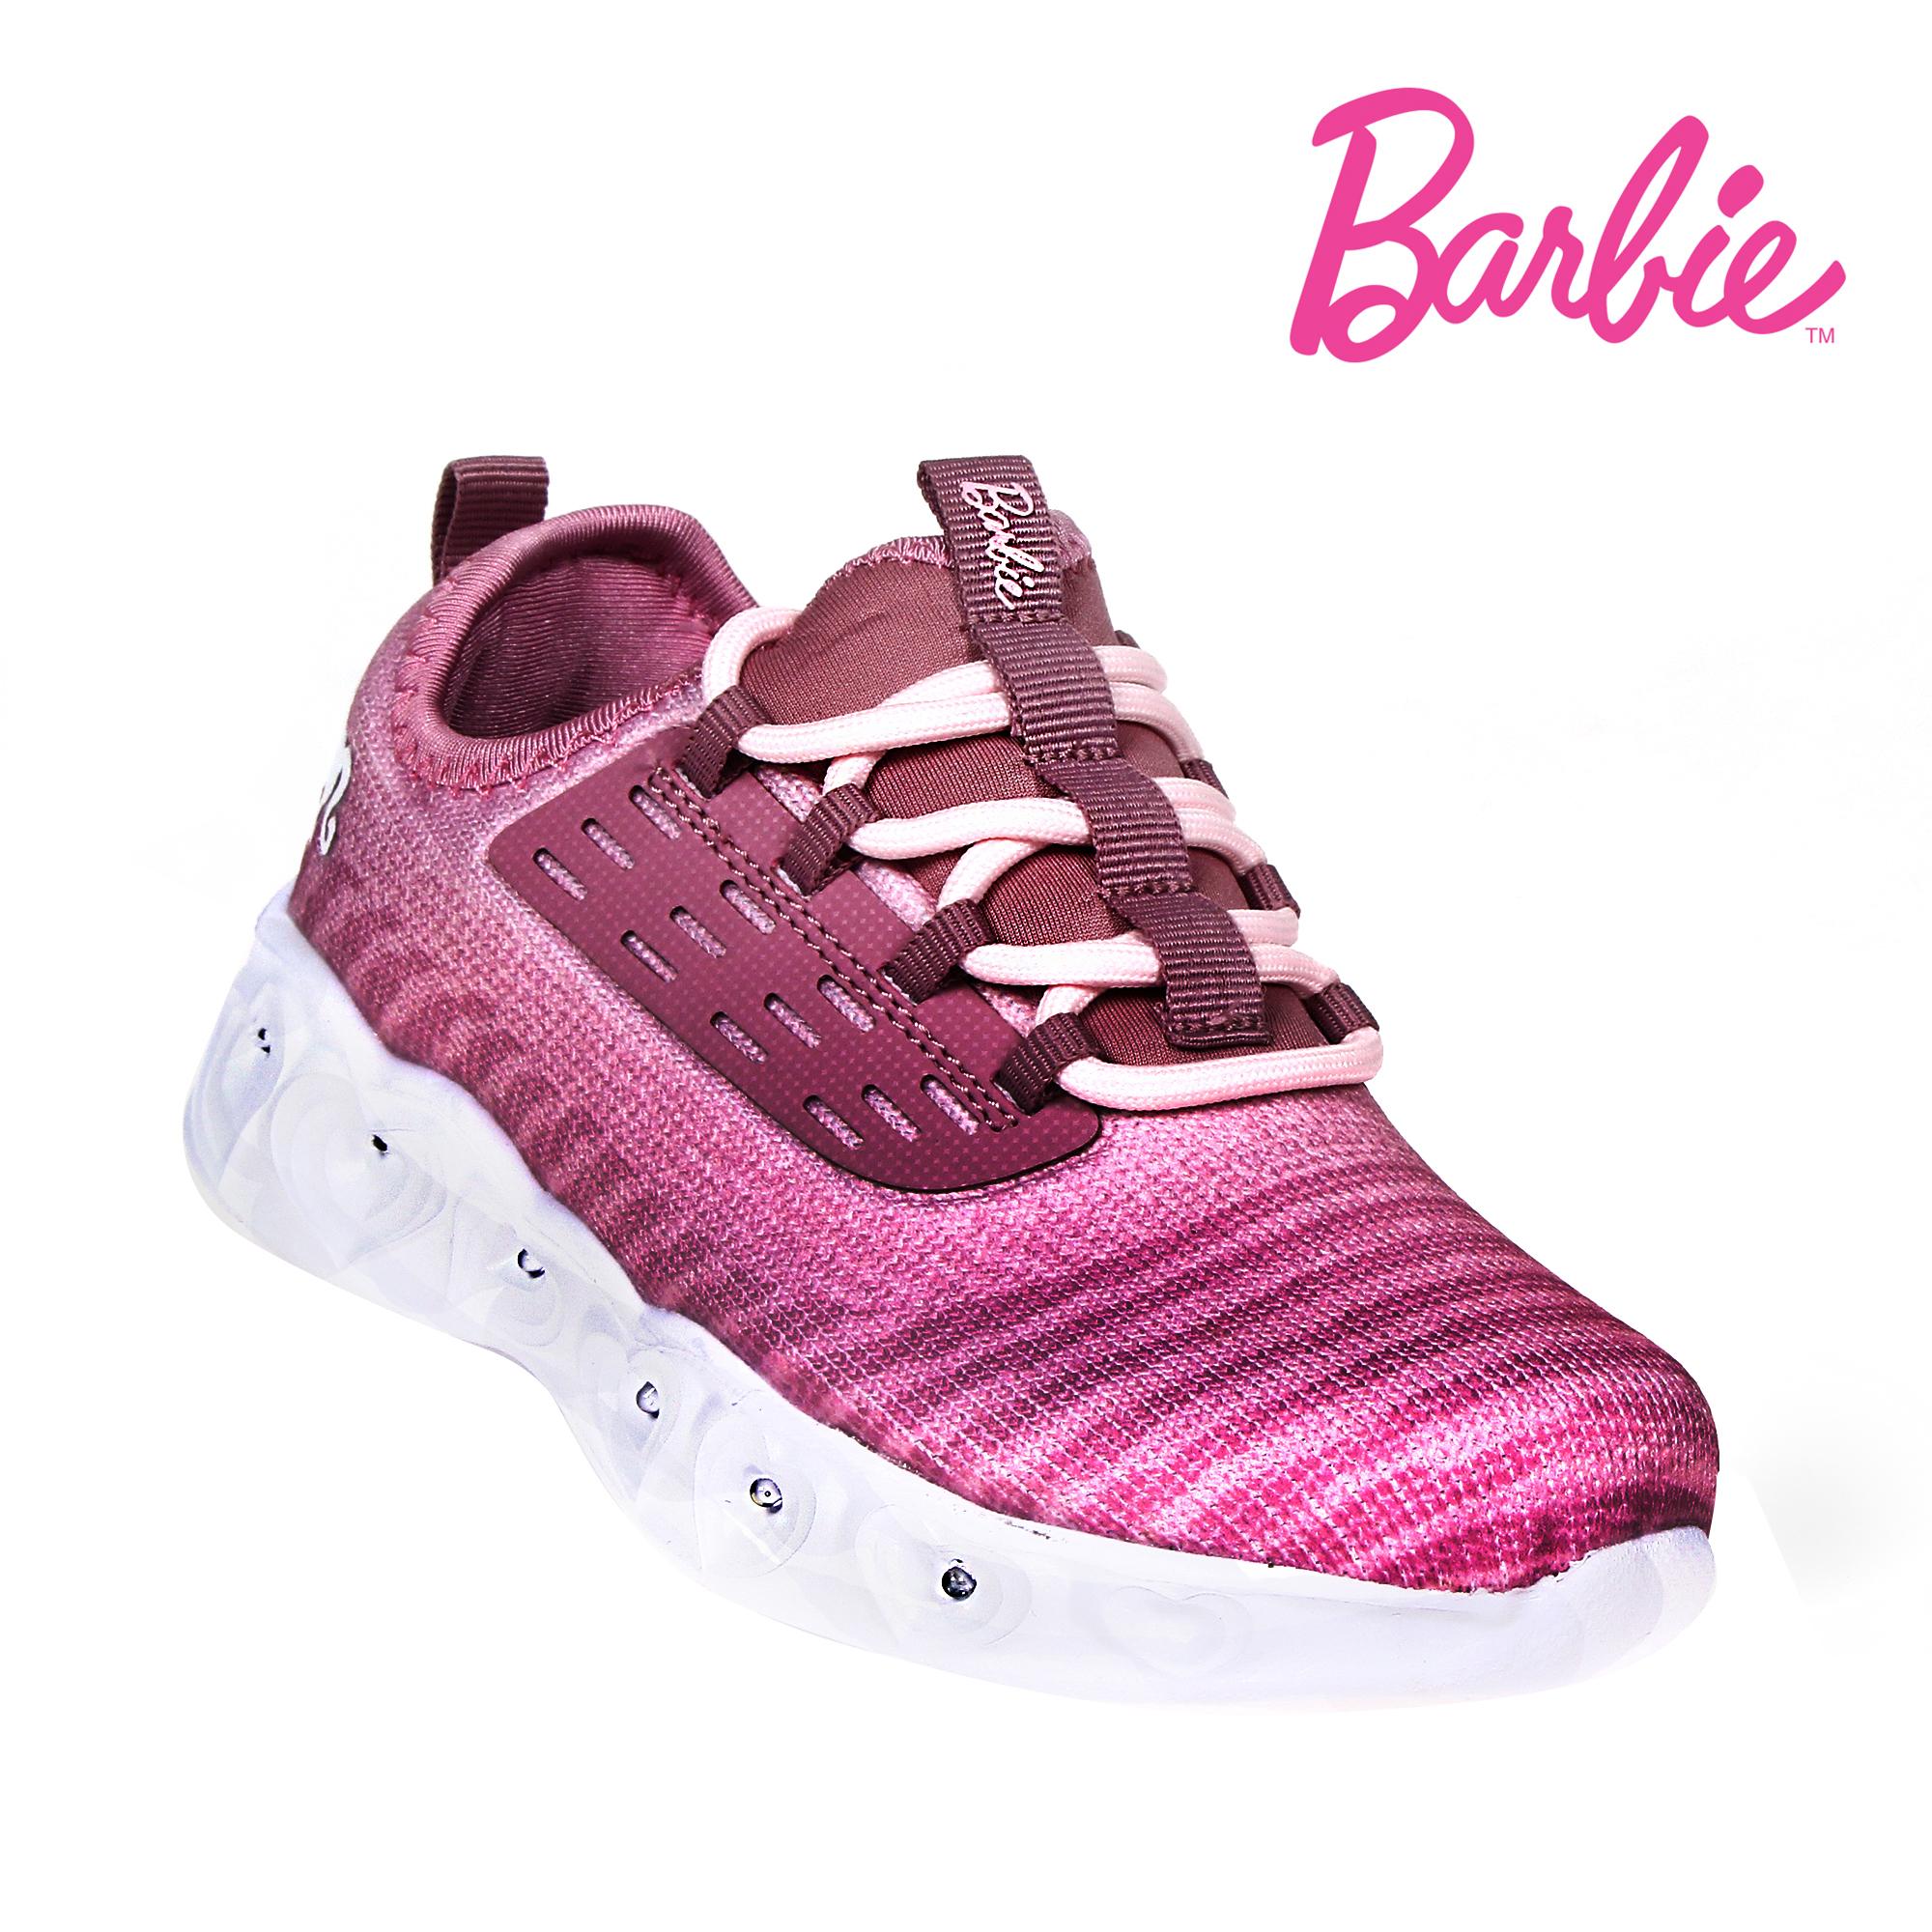 barbie rubber shoes